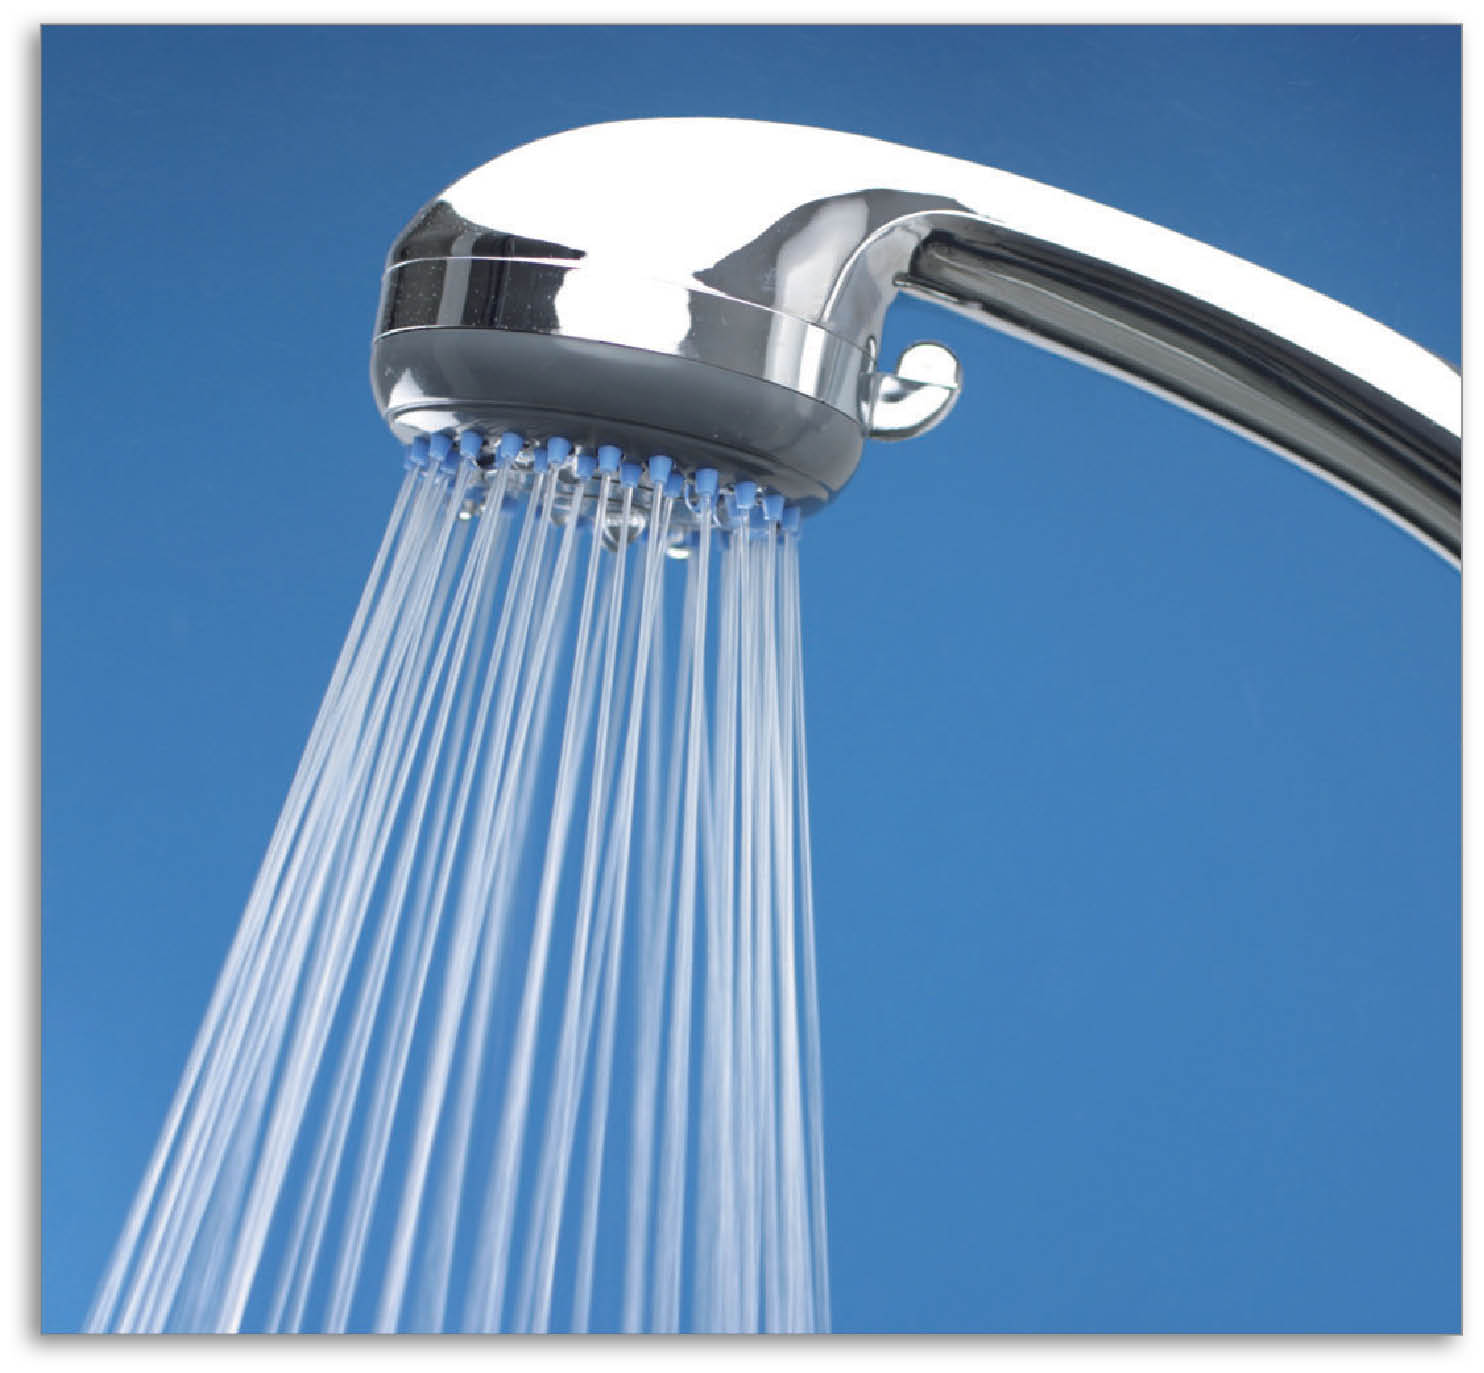 Як правильно приймати контрастний душ?